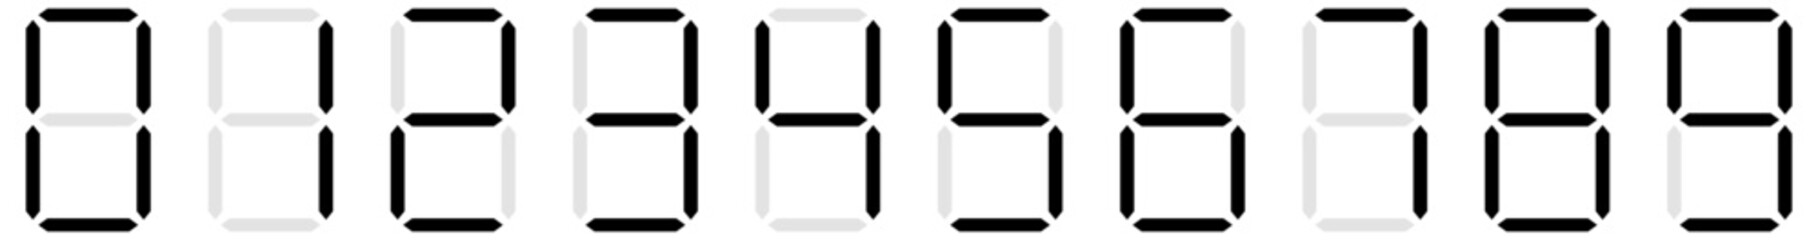 Digital display of digits, numbers, numberals. Scoreboard, digital clock, stopwatch numbers - 422914707